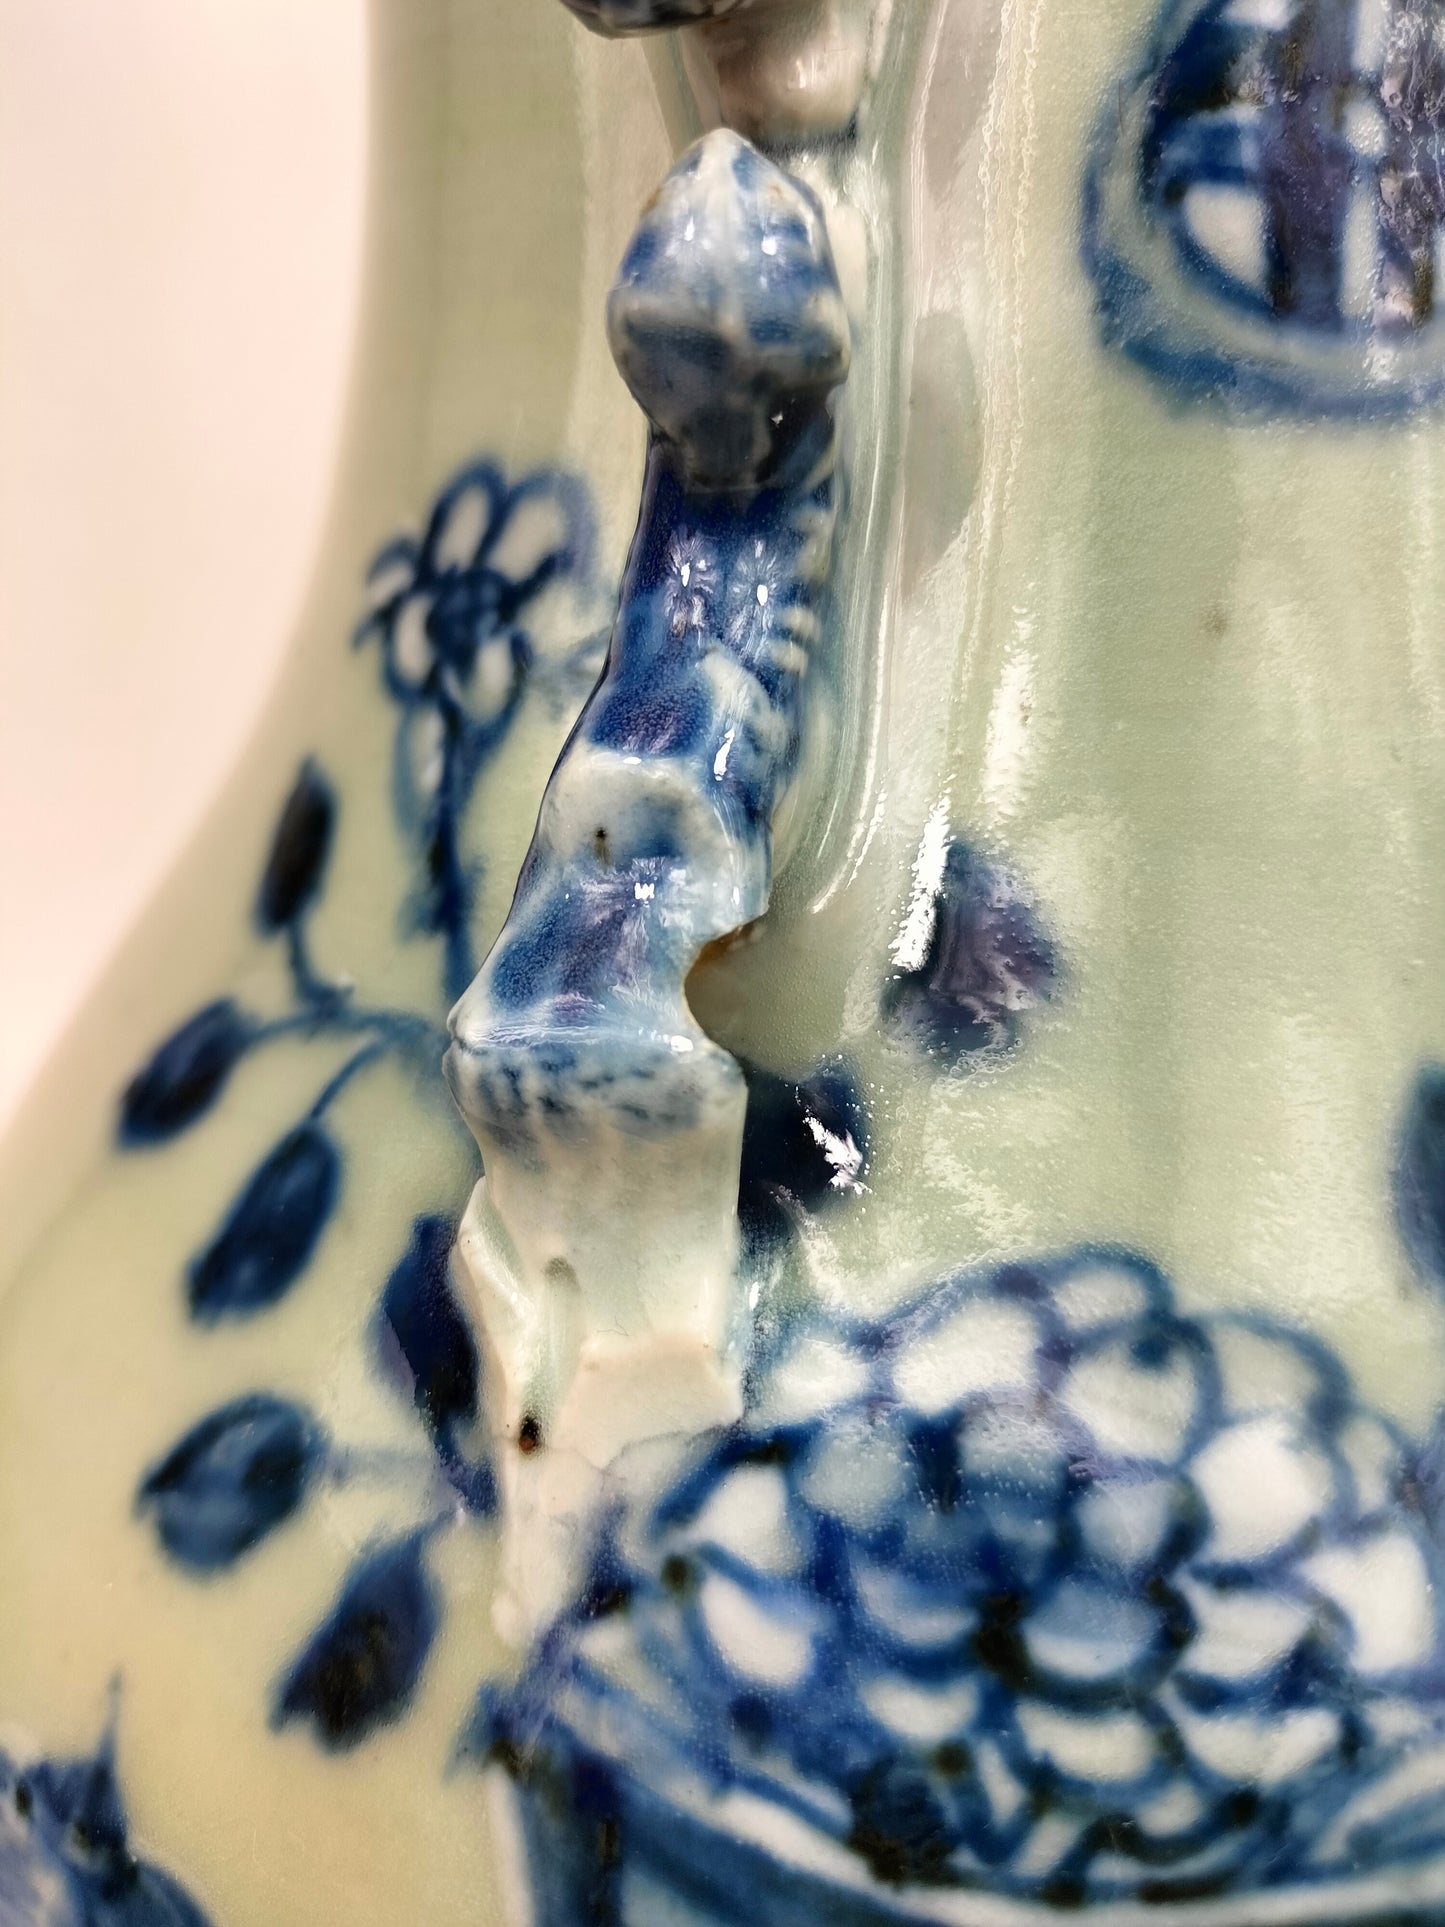 Antigo vaso celadon chinês decorado com antiguidades // Dinastia Qing - século XIX